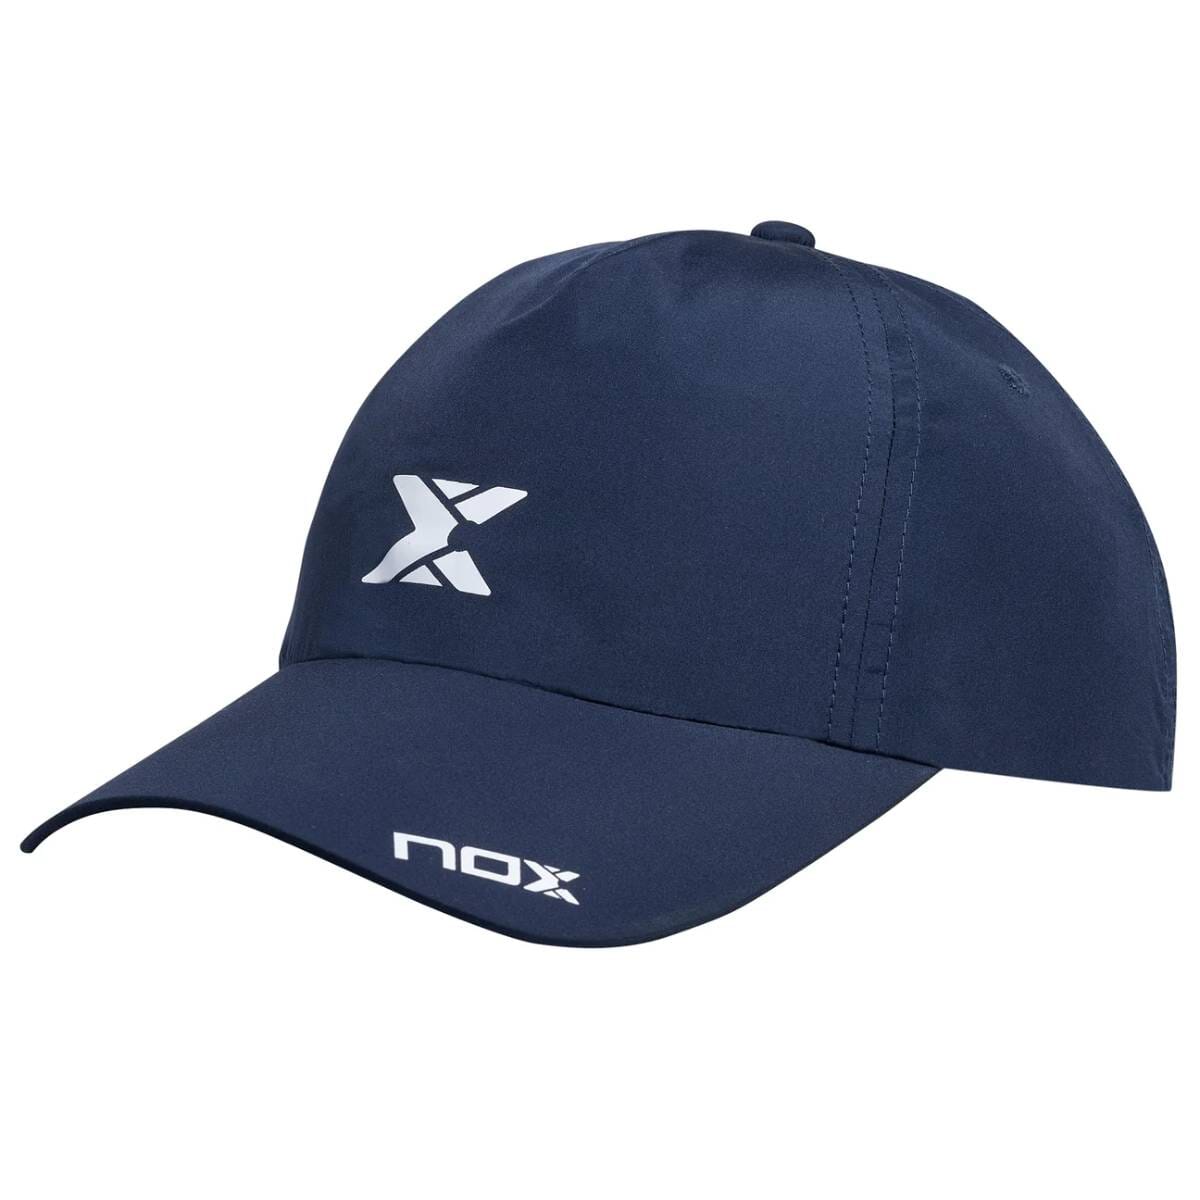 NOX Cap Navy/Hvid